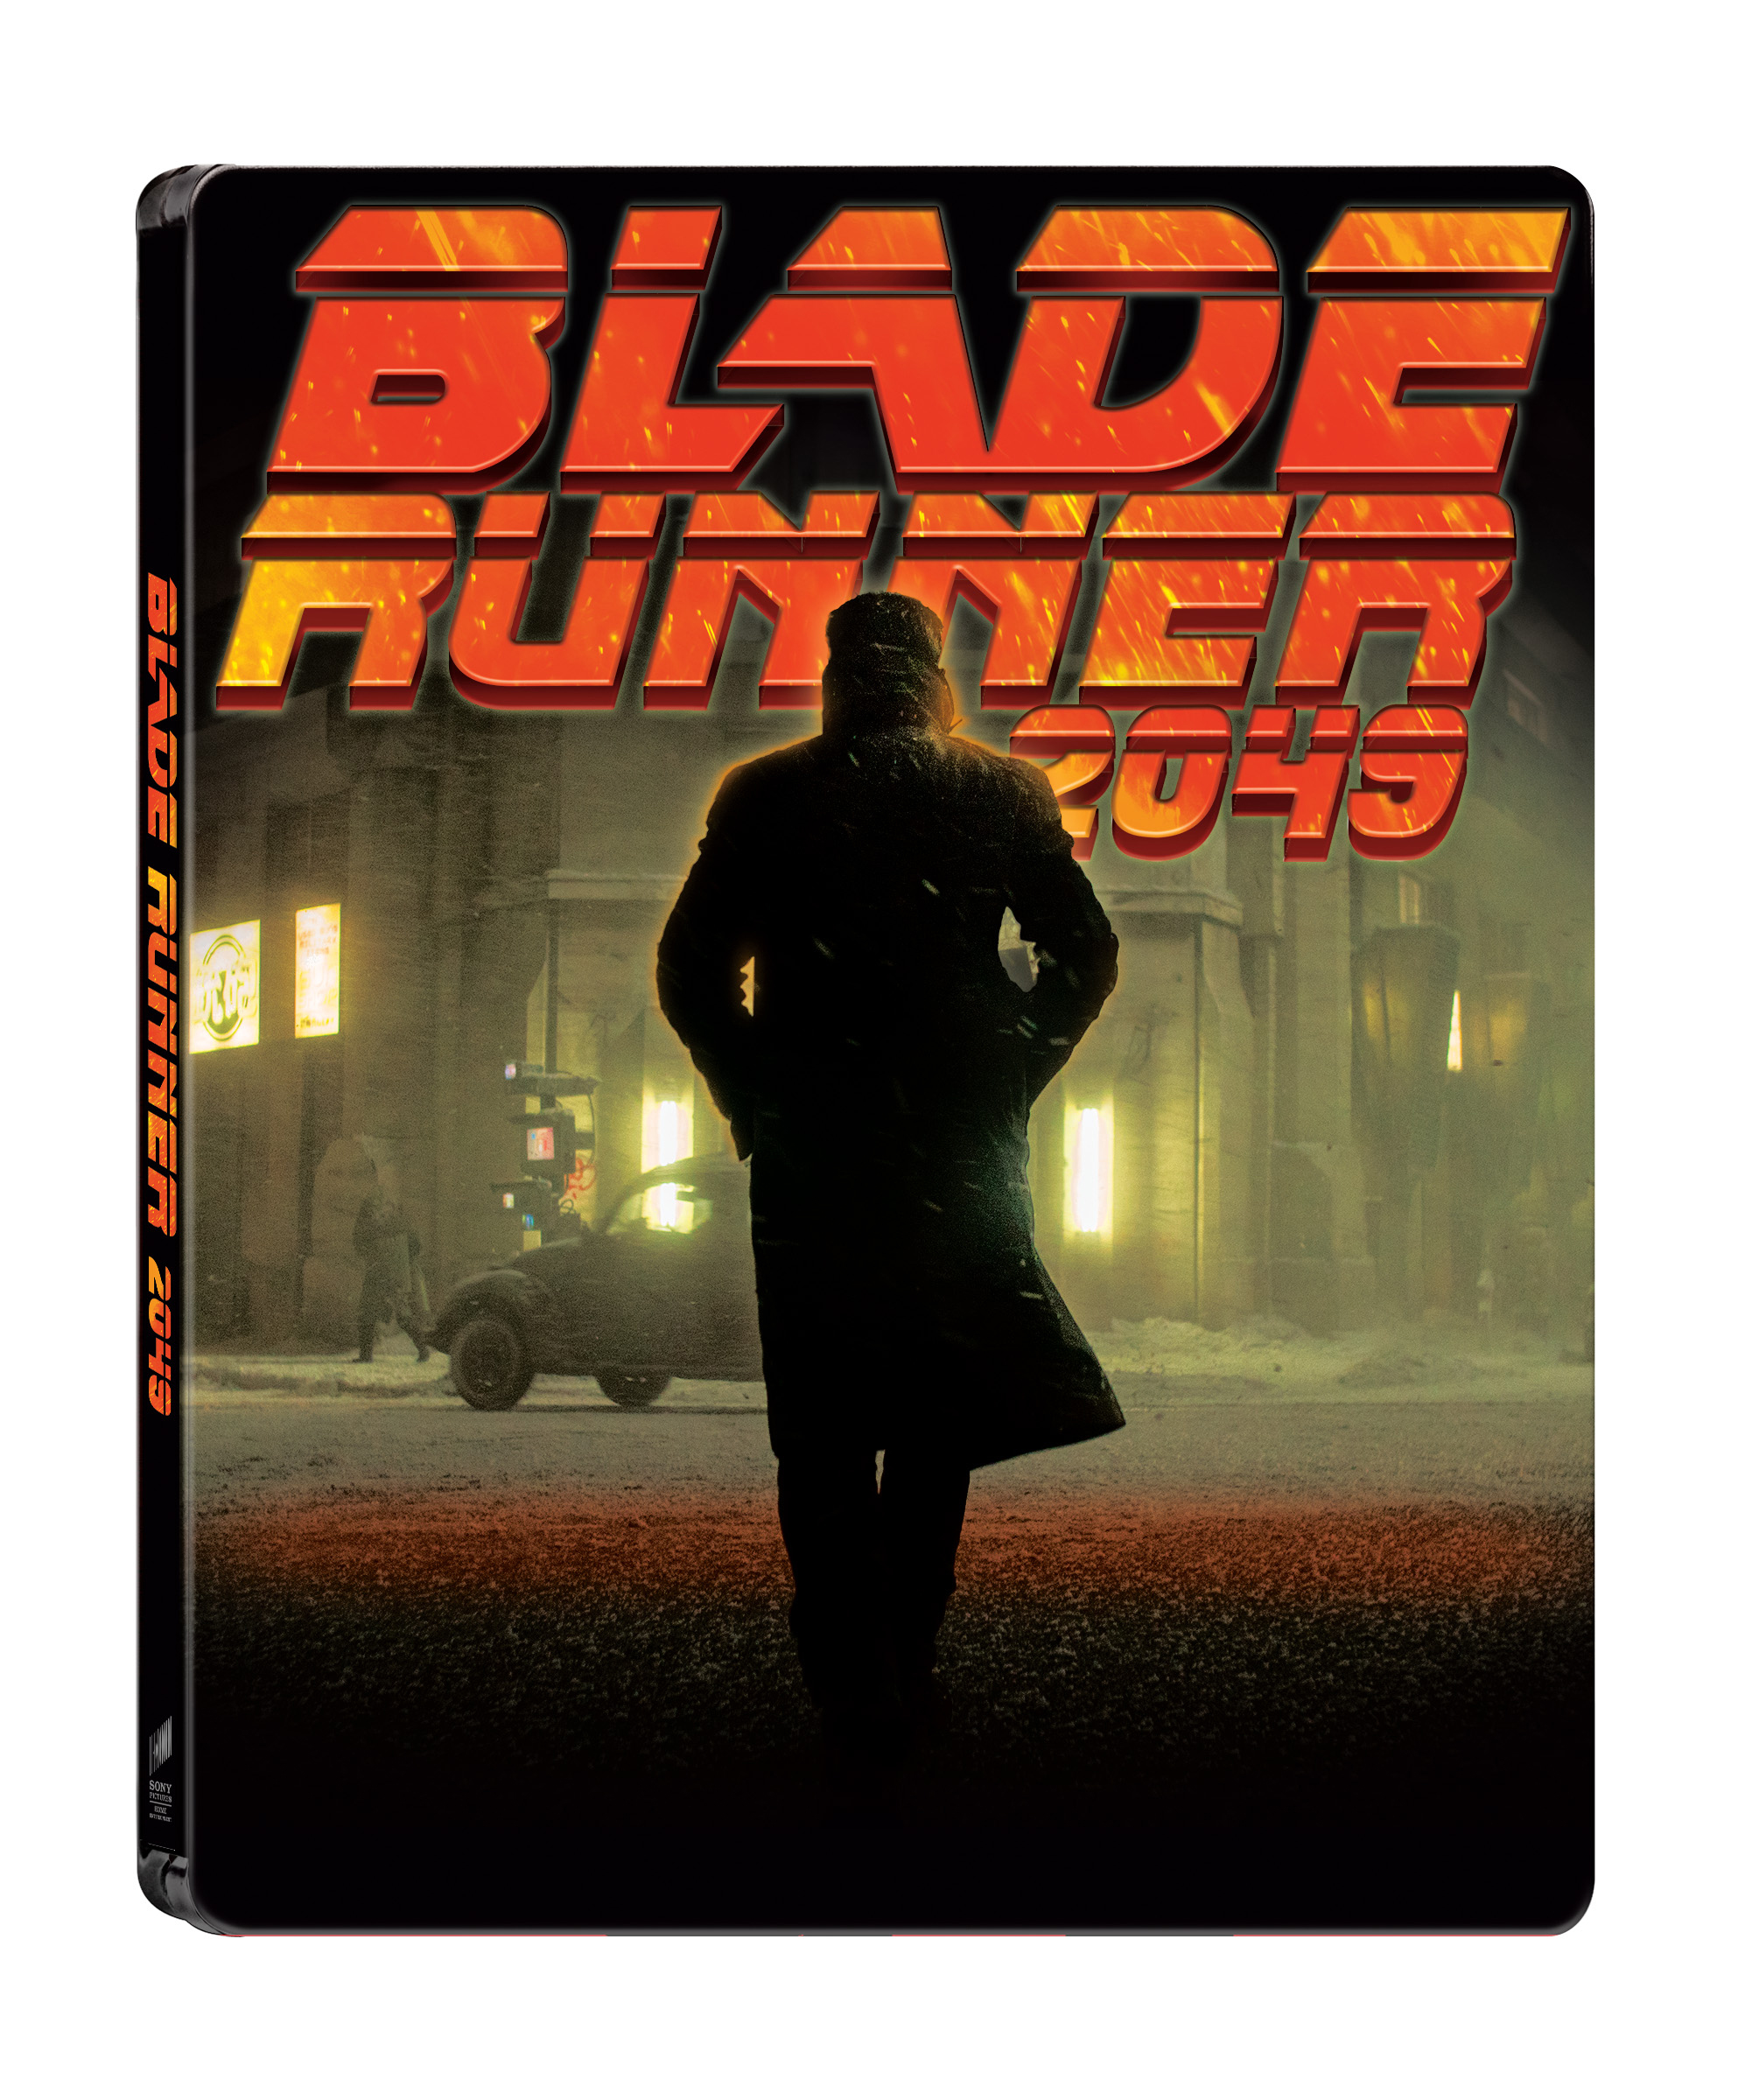 [Blu-ray] 블레이드 러너 2049 4K(3Disc: 4K UHD+BD+BD) 스틸북 한정판